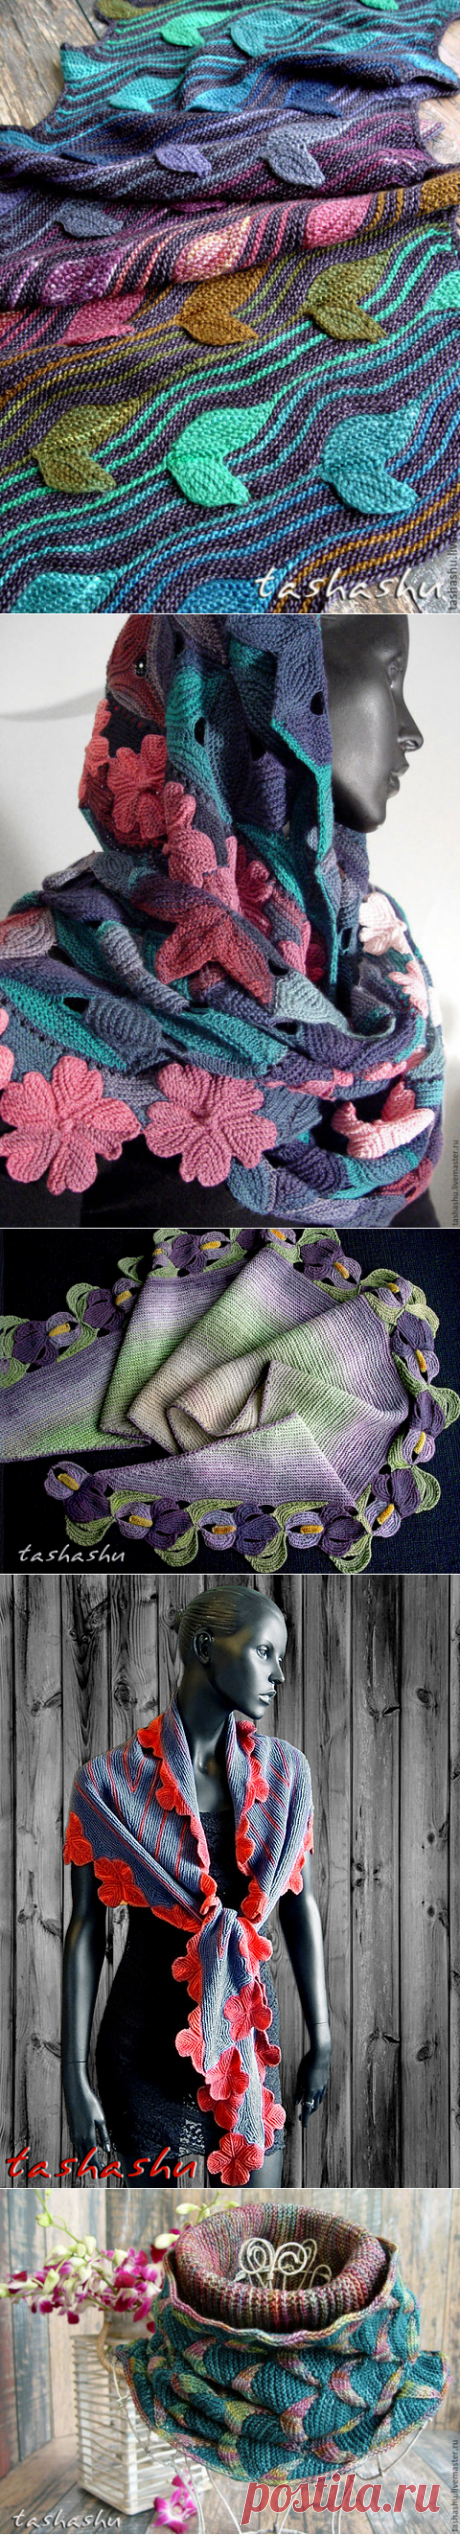 Изумительные шарфы Светланы Гордон, связанные спицами